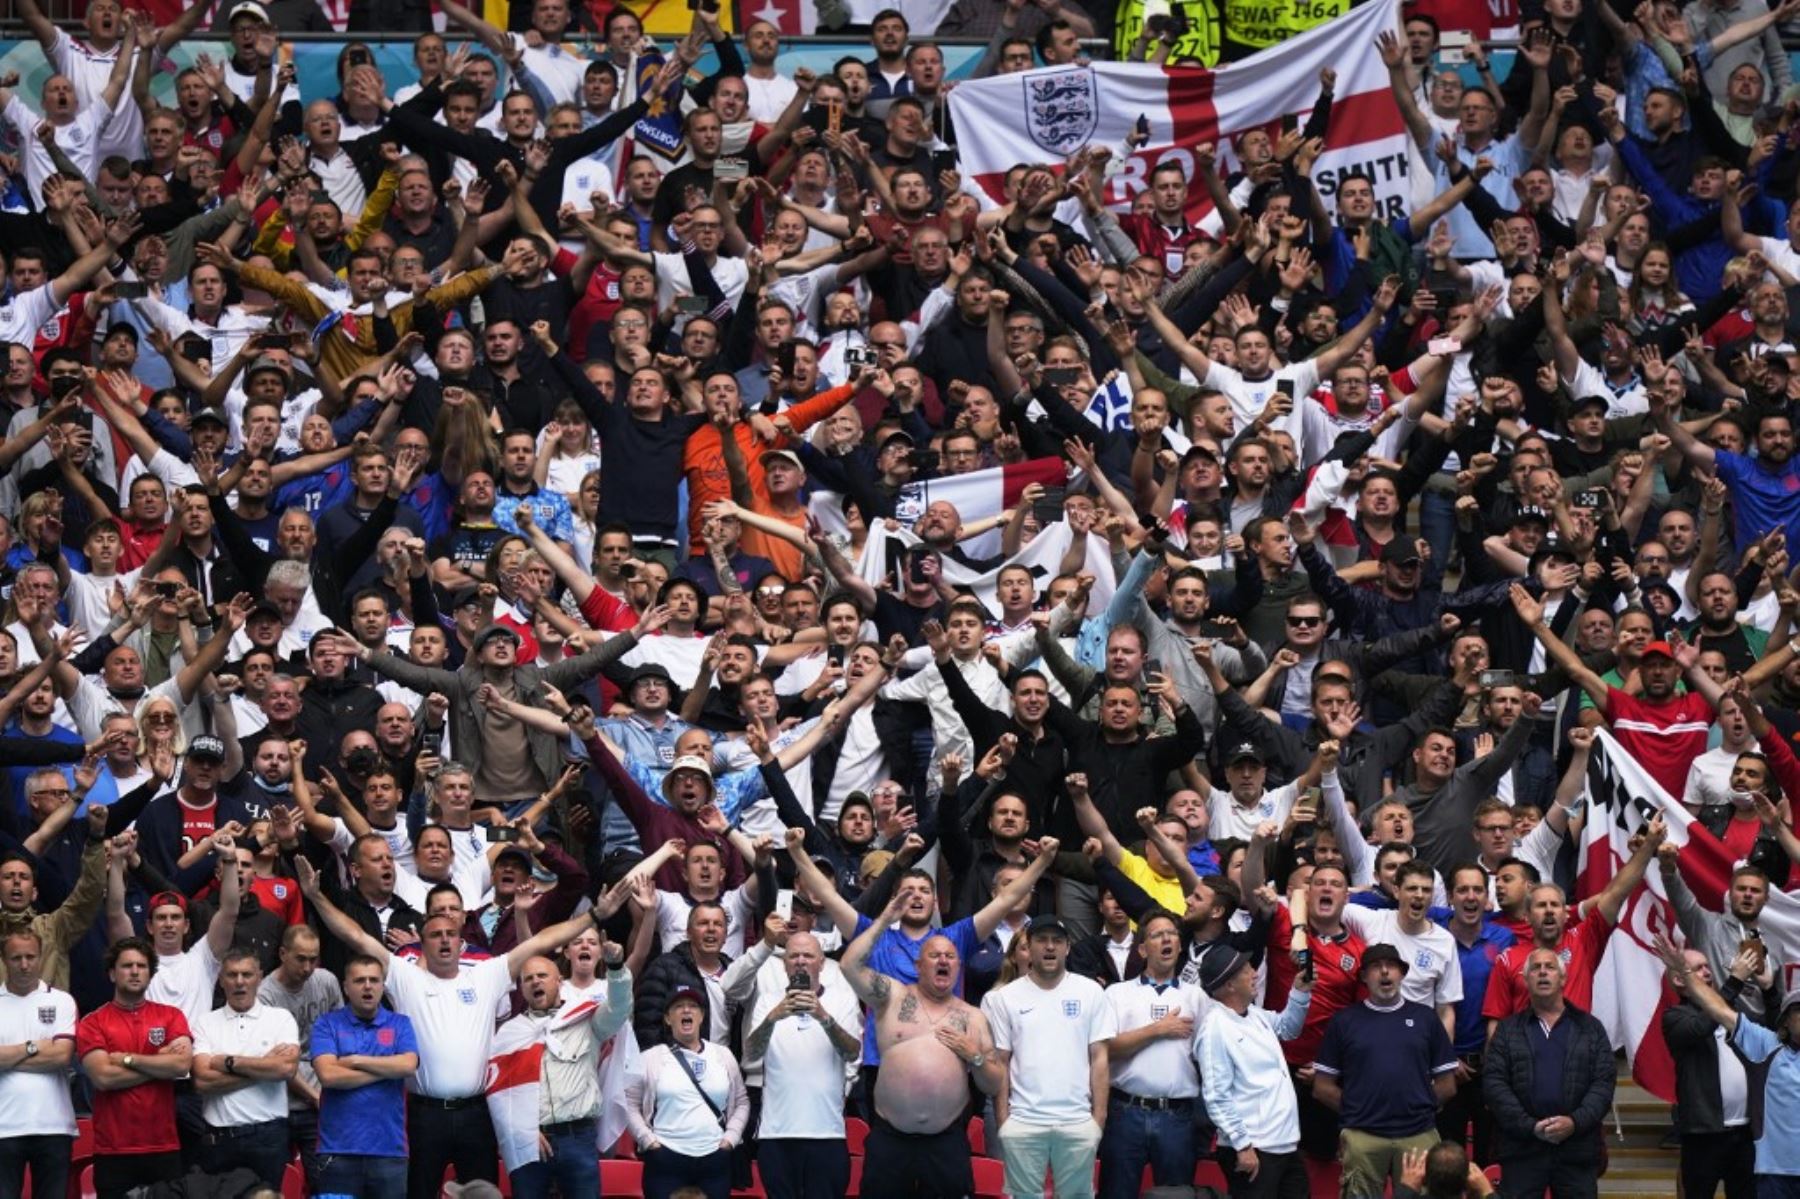 Los aficionados que quieran ingresar al estadio Wembley para ver los partidos de la semifinal o final de la Eurocopa deben cumplir cuarentena